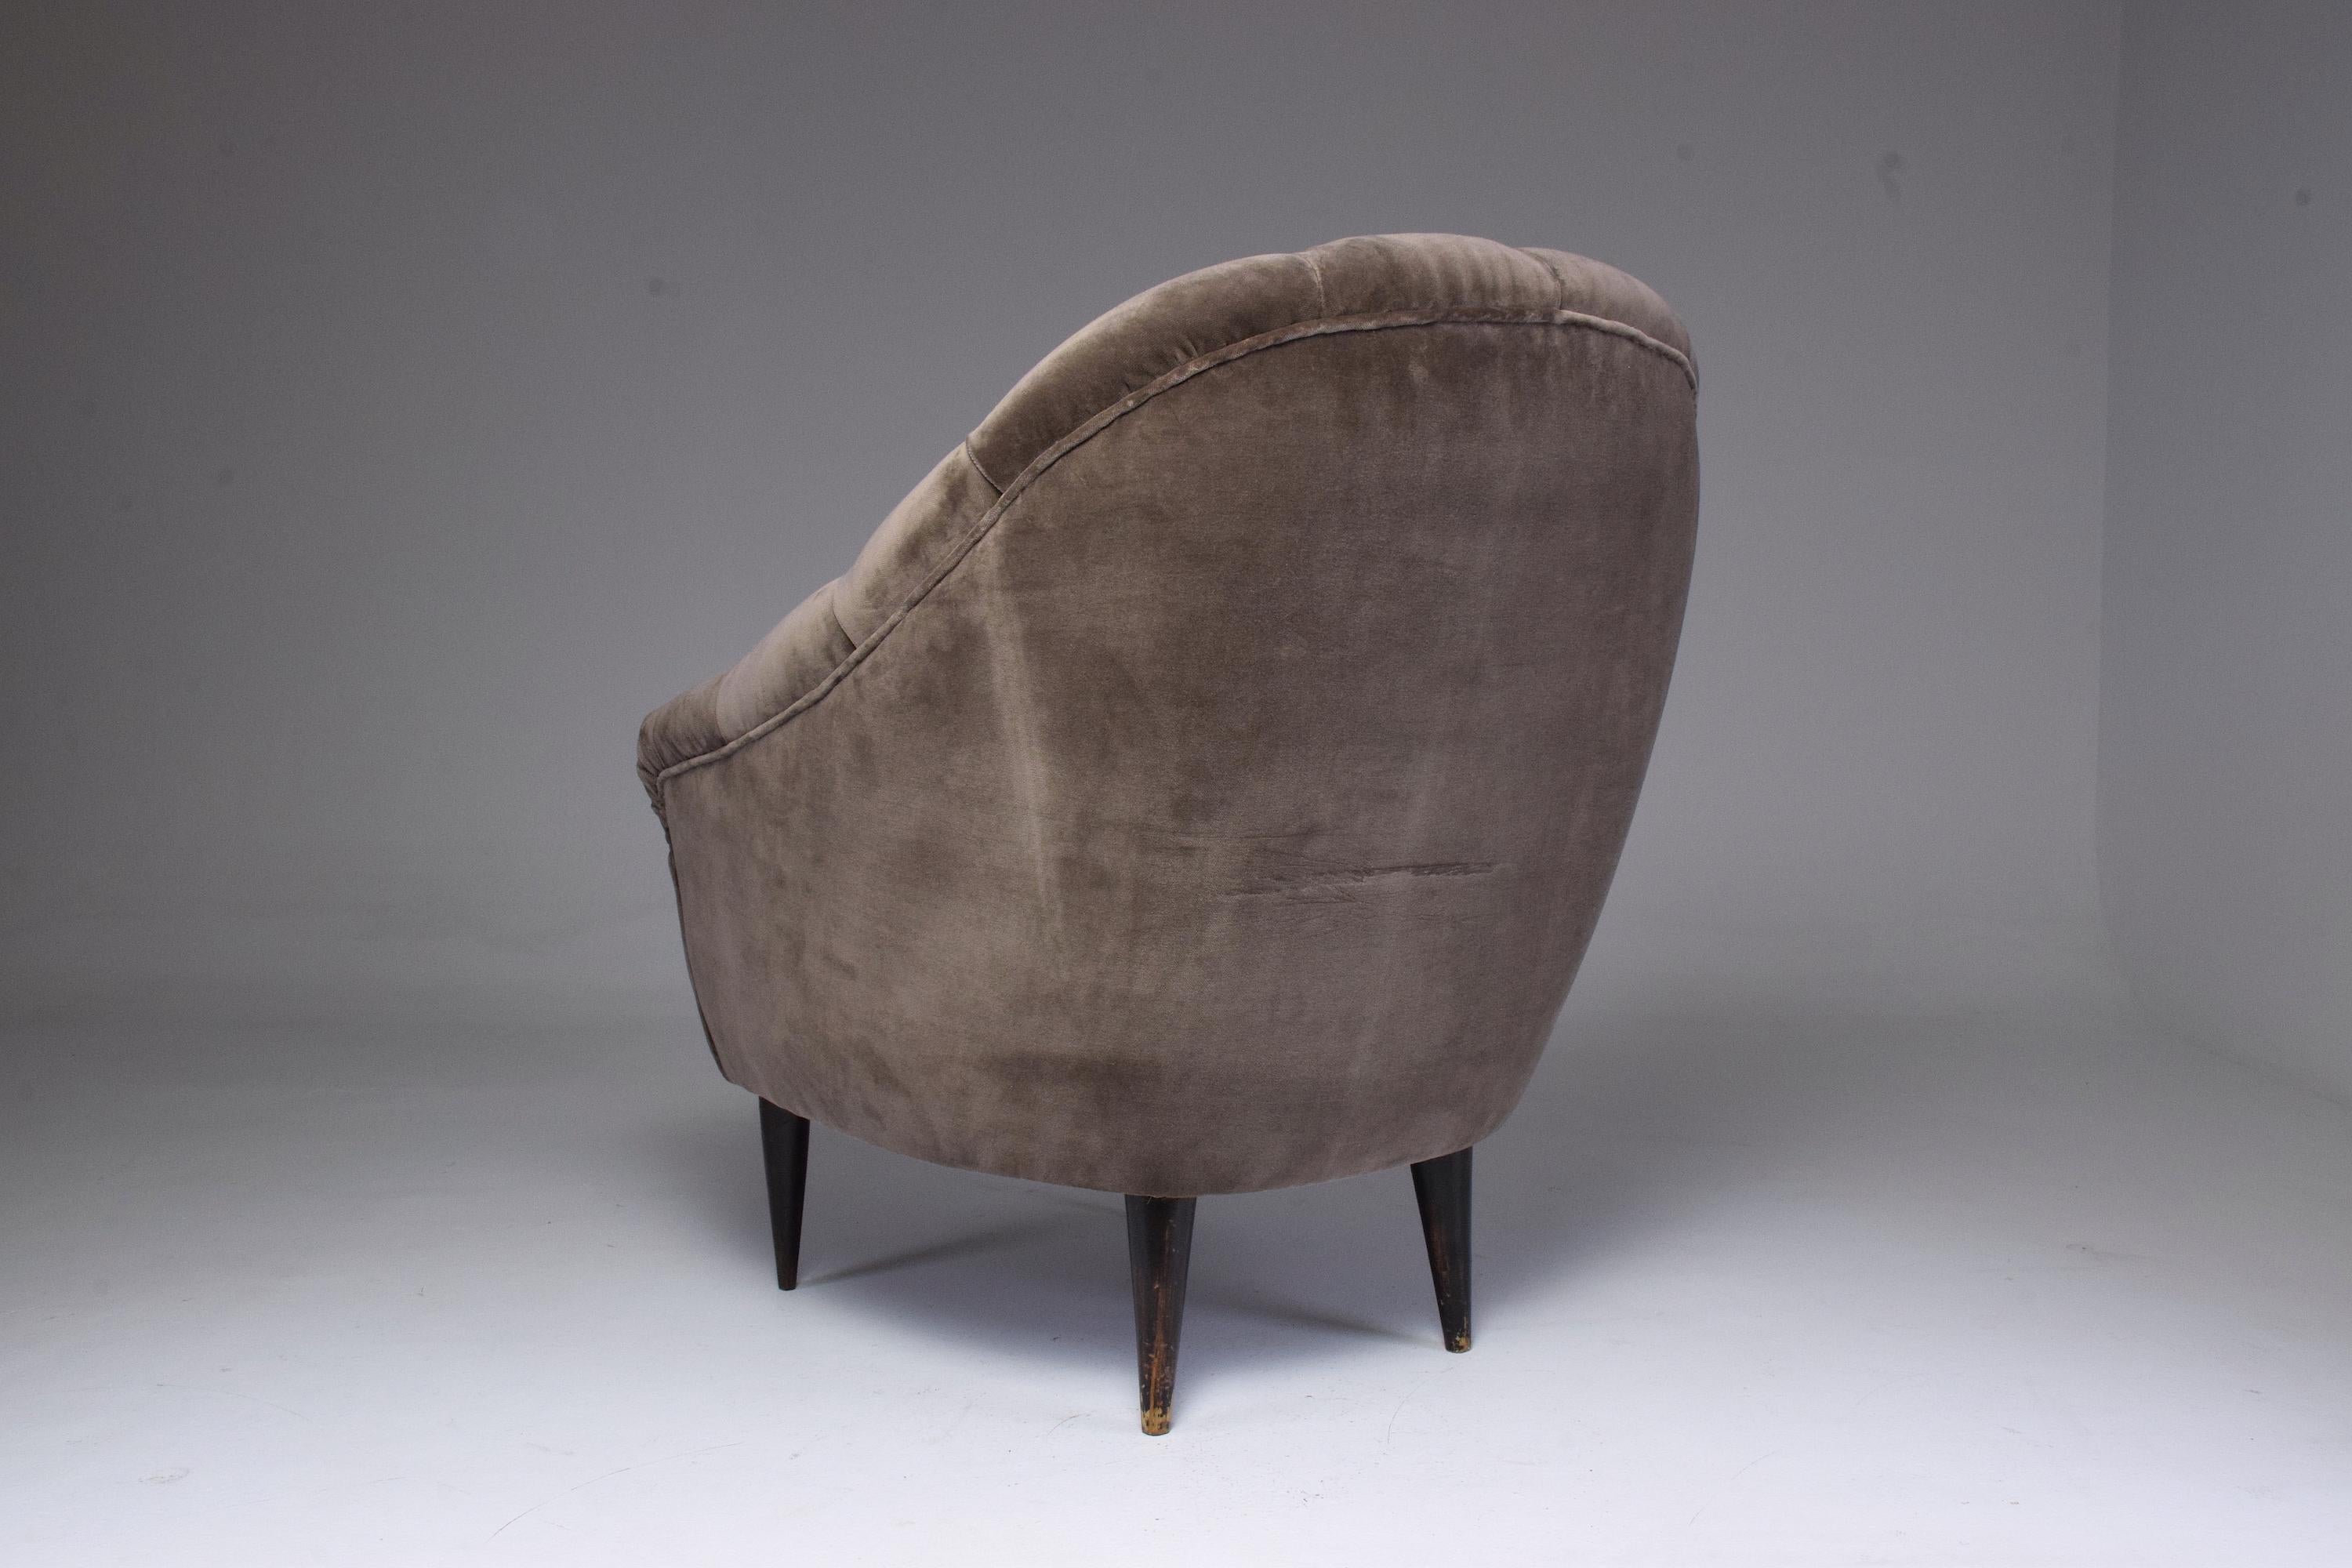 Zwei italienische Sessel aus dem 20. Jahrhundert, die in den 1950er Jahren im Stil von Gio Ponti hergestellt wurden. Diese Sessel zeichnen sich durch ihre komfortable Tiefe aus. 
Meisterhaft neu gepolstert und mit einem neuen Pad aus dunkelbraunem